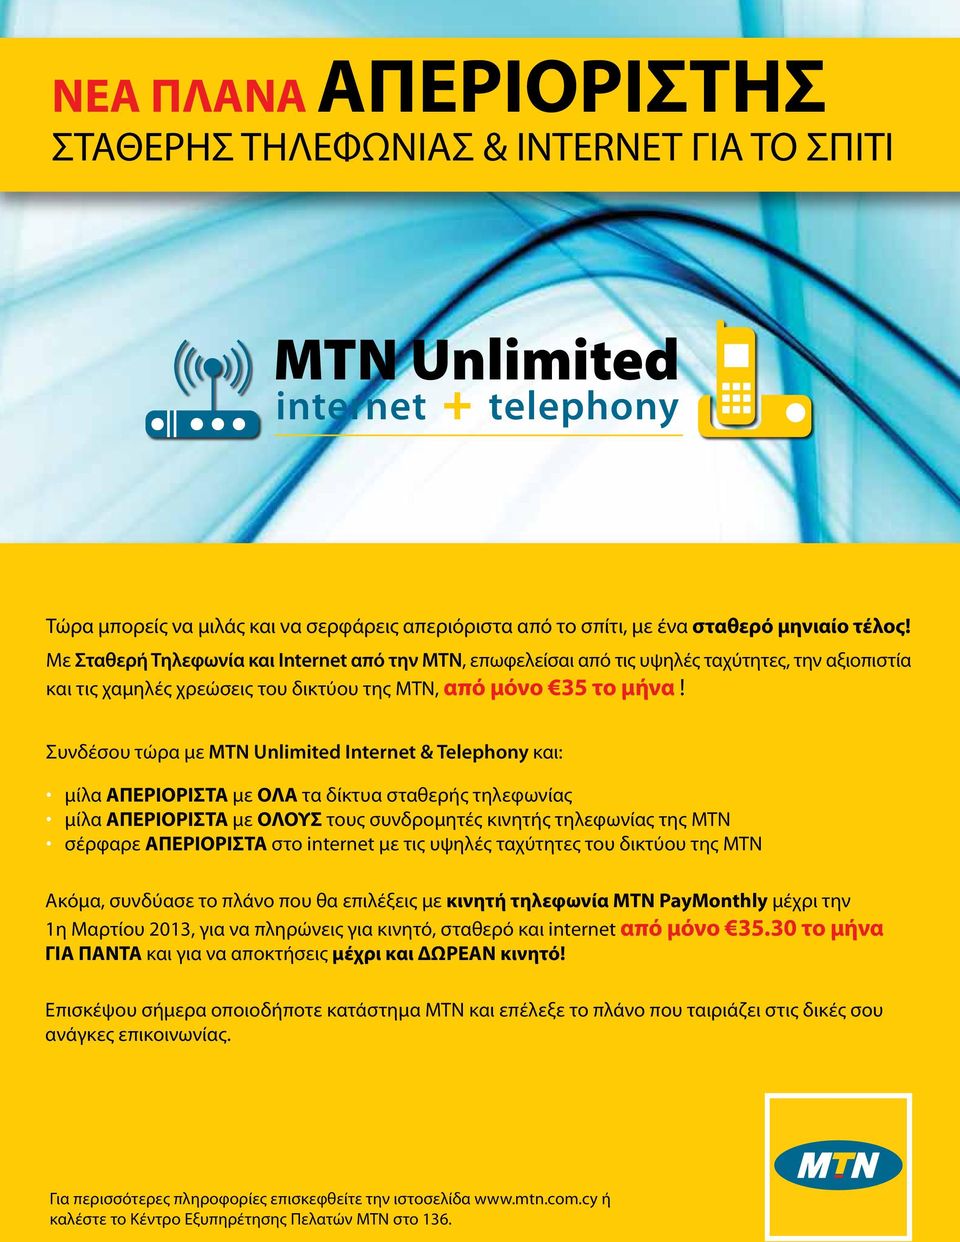 Συνδέσου τώρα με MTN Unlimited Internet & Telephony και: μίλα ΑΠΕΡΙΟΡΙΣΤΑ με ΟΛΑ τα δίκτυα σταθερής τηλεφωνίας μίλα ΑΠΕΡΙΟΡΙΣΤΑ με ΟΛΟΥΣ τους συνδρομητές κινητής τηλεφωνίας της MTN σέρφαρε